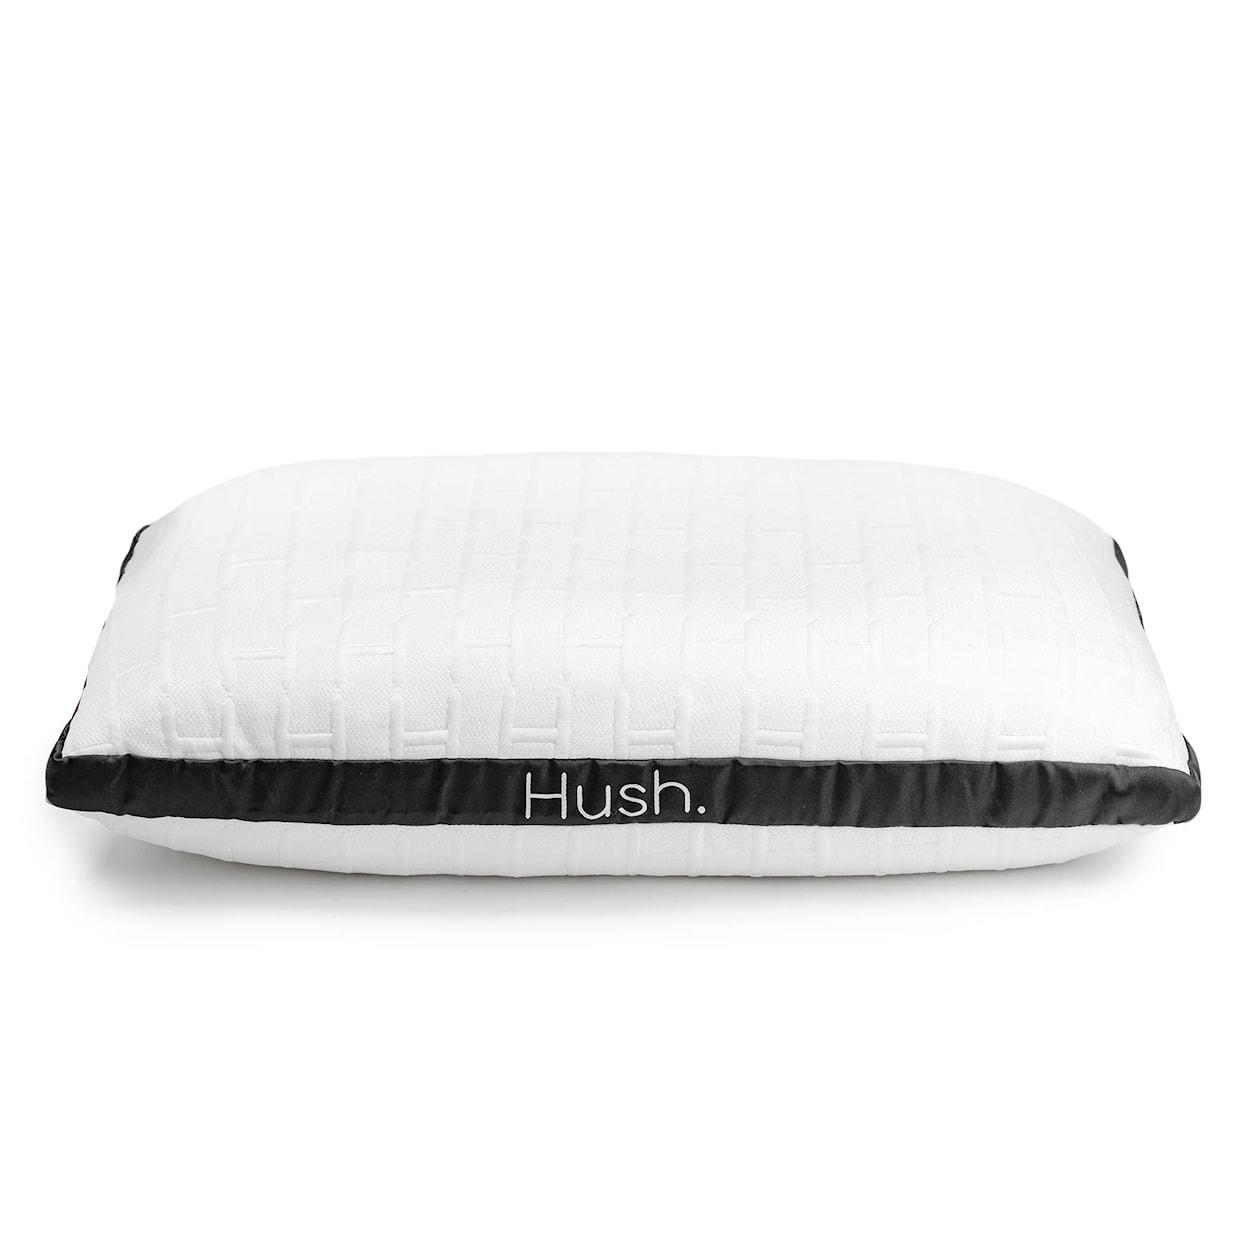 Hush Pillow Pillow - Standard